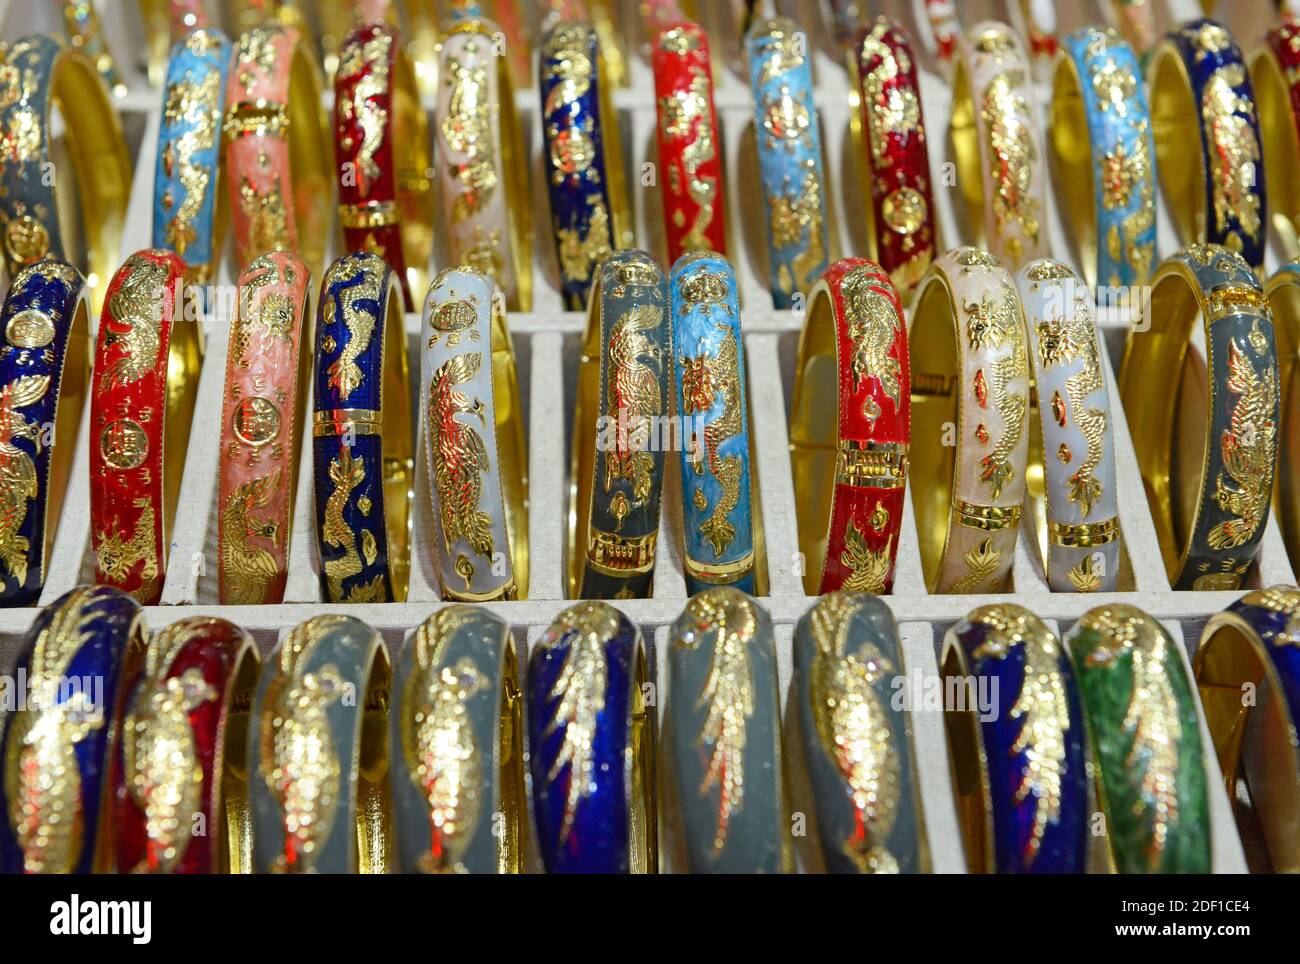 Pulseras de estilo cloisonné a la venta, decoradas con motivos y patrones tradicionales, en una tienda en el Palacio de Verano en Beijing, China Foto de stock